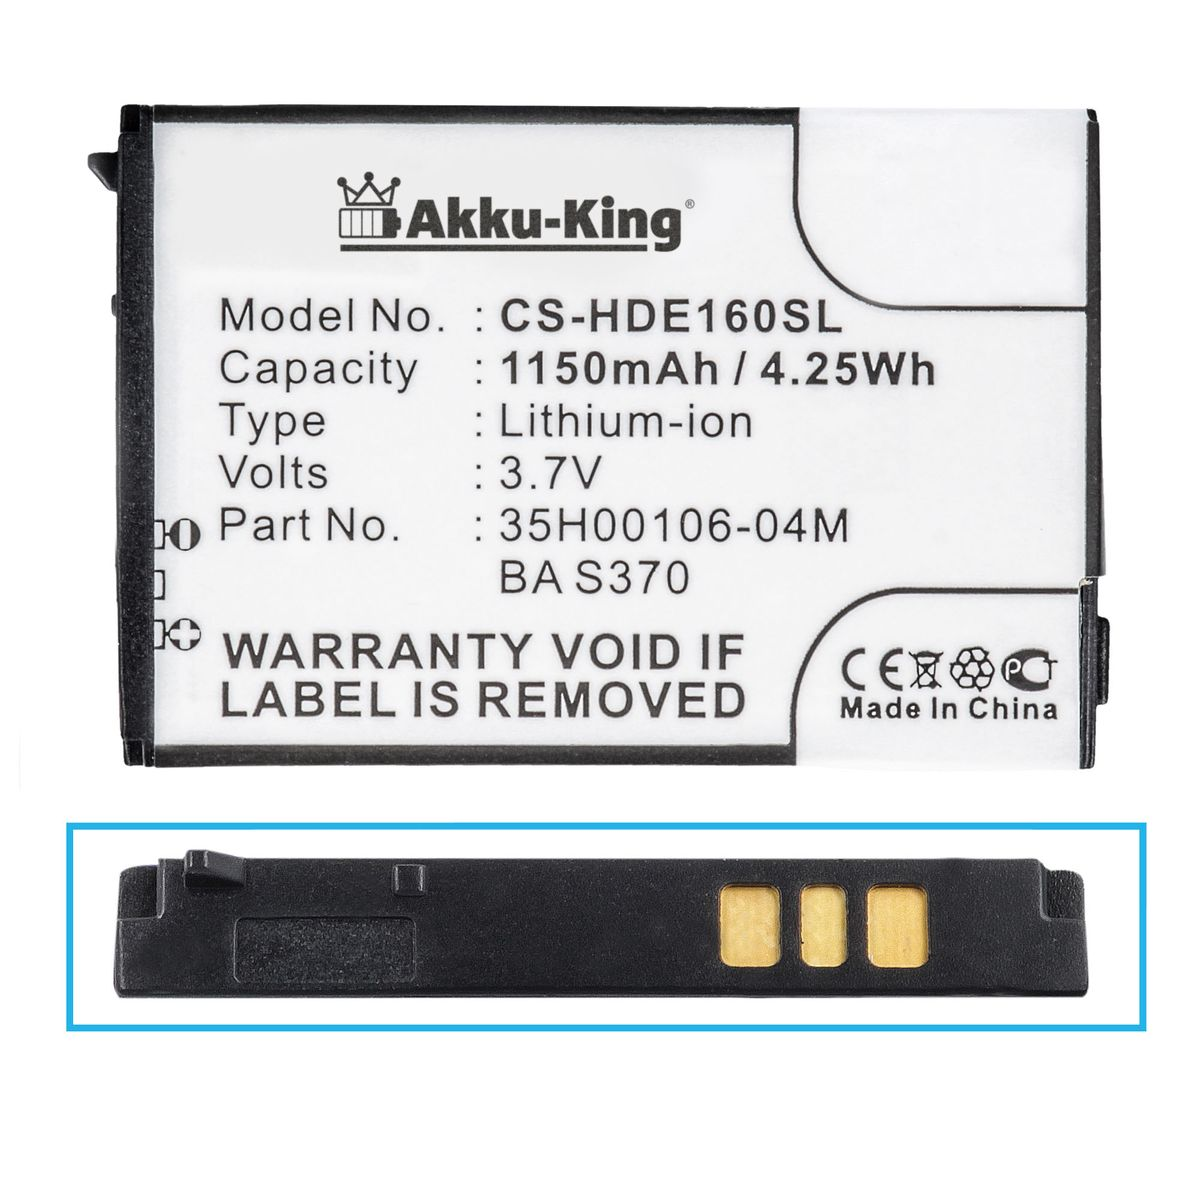 kompatibel BA Akku S370 AKKU-KING Volt, 3.7 Li-Ion 1150mAh Handy-Akku, HTC mit